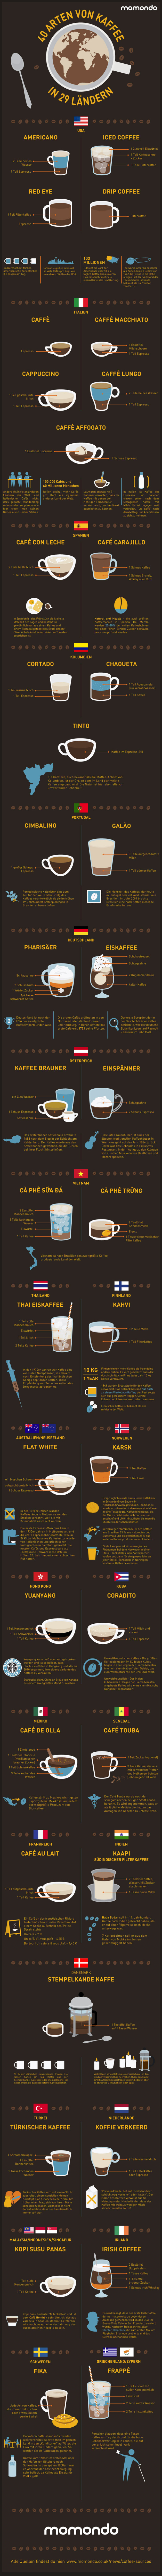 40 Arten von Kaffee in 29 Ländern